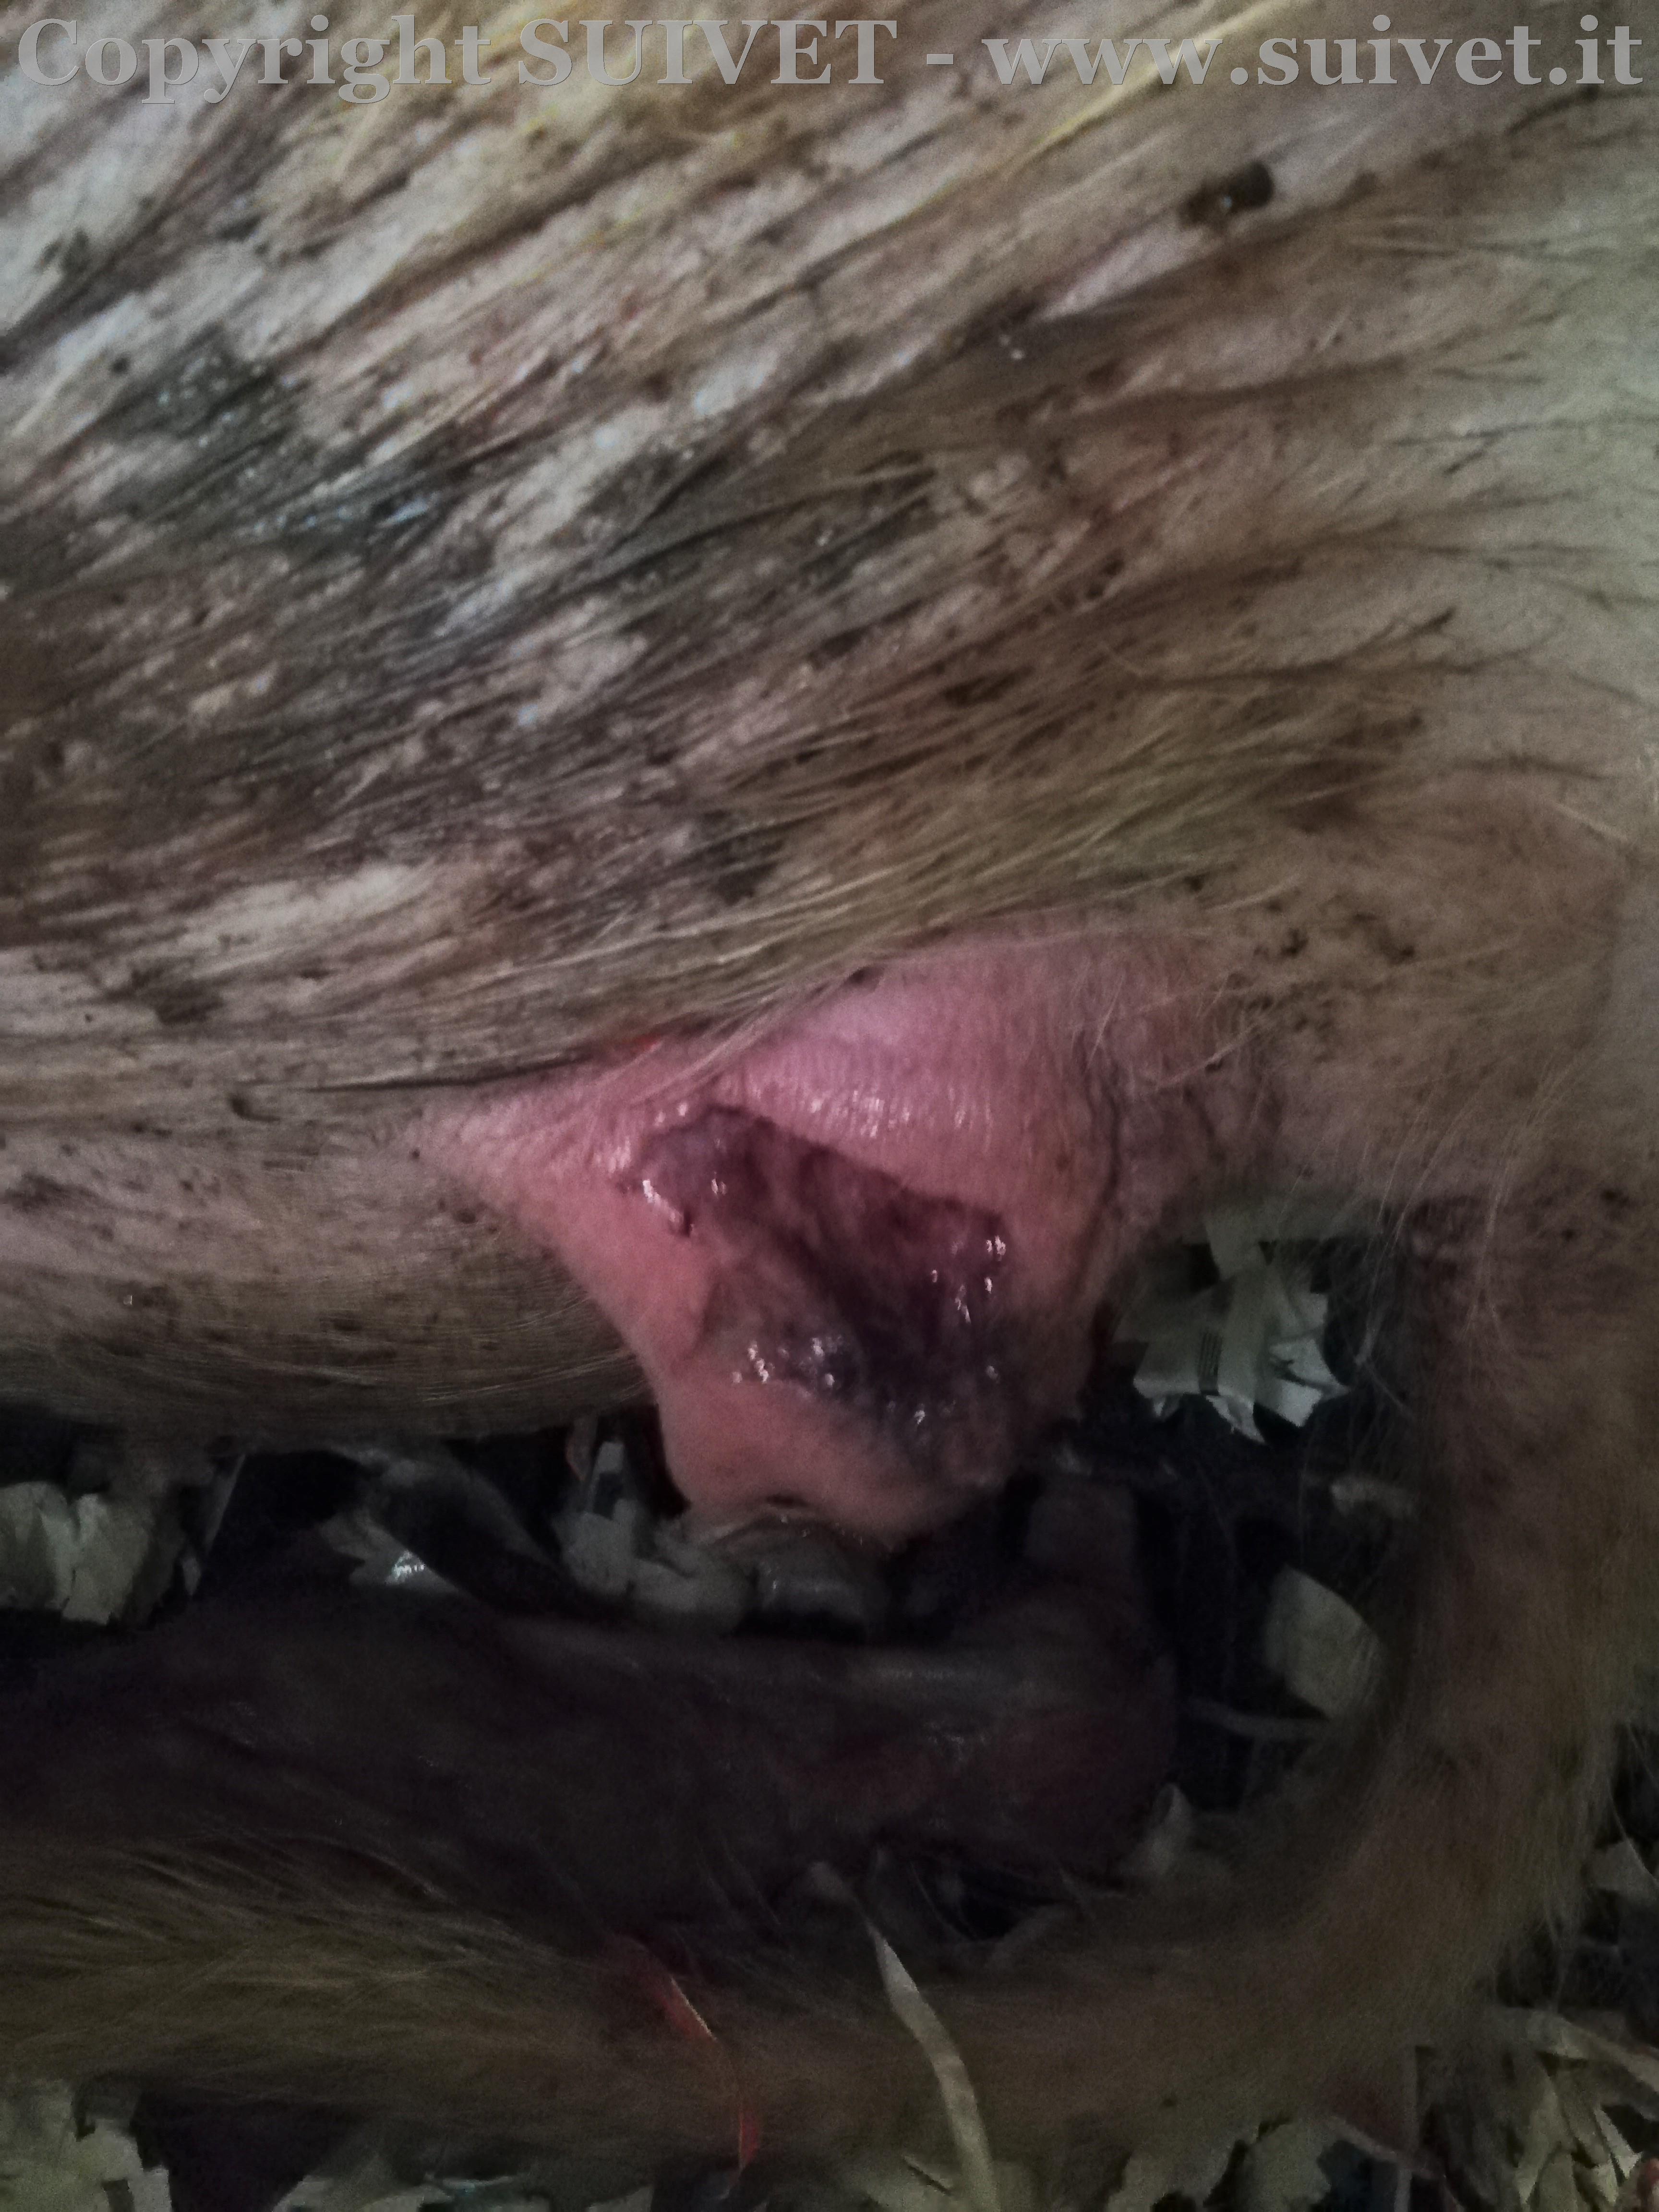 Foto 3: emorragia della vulva